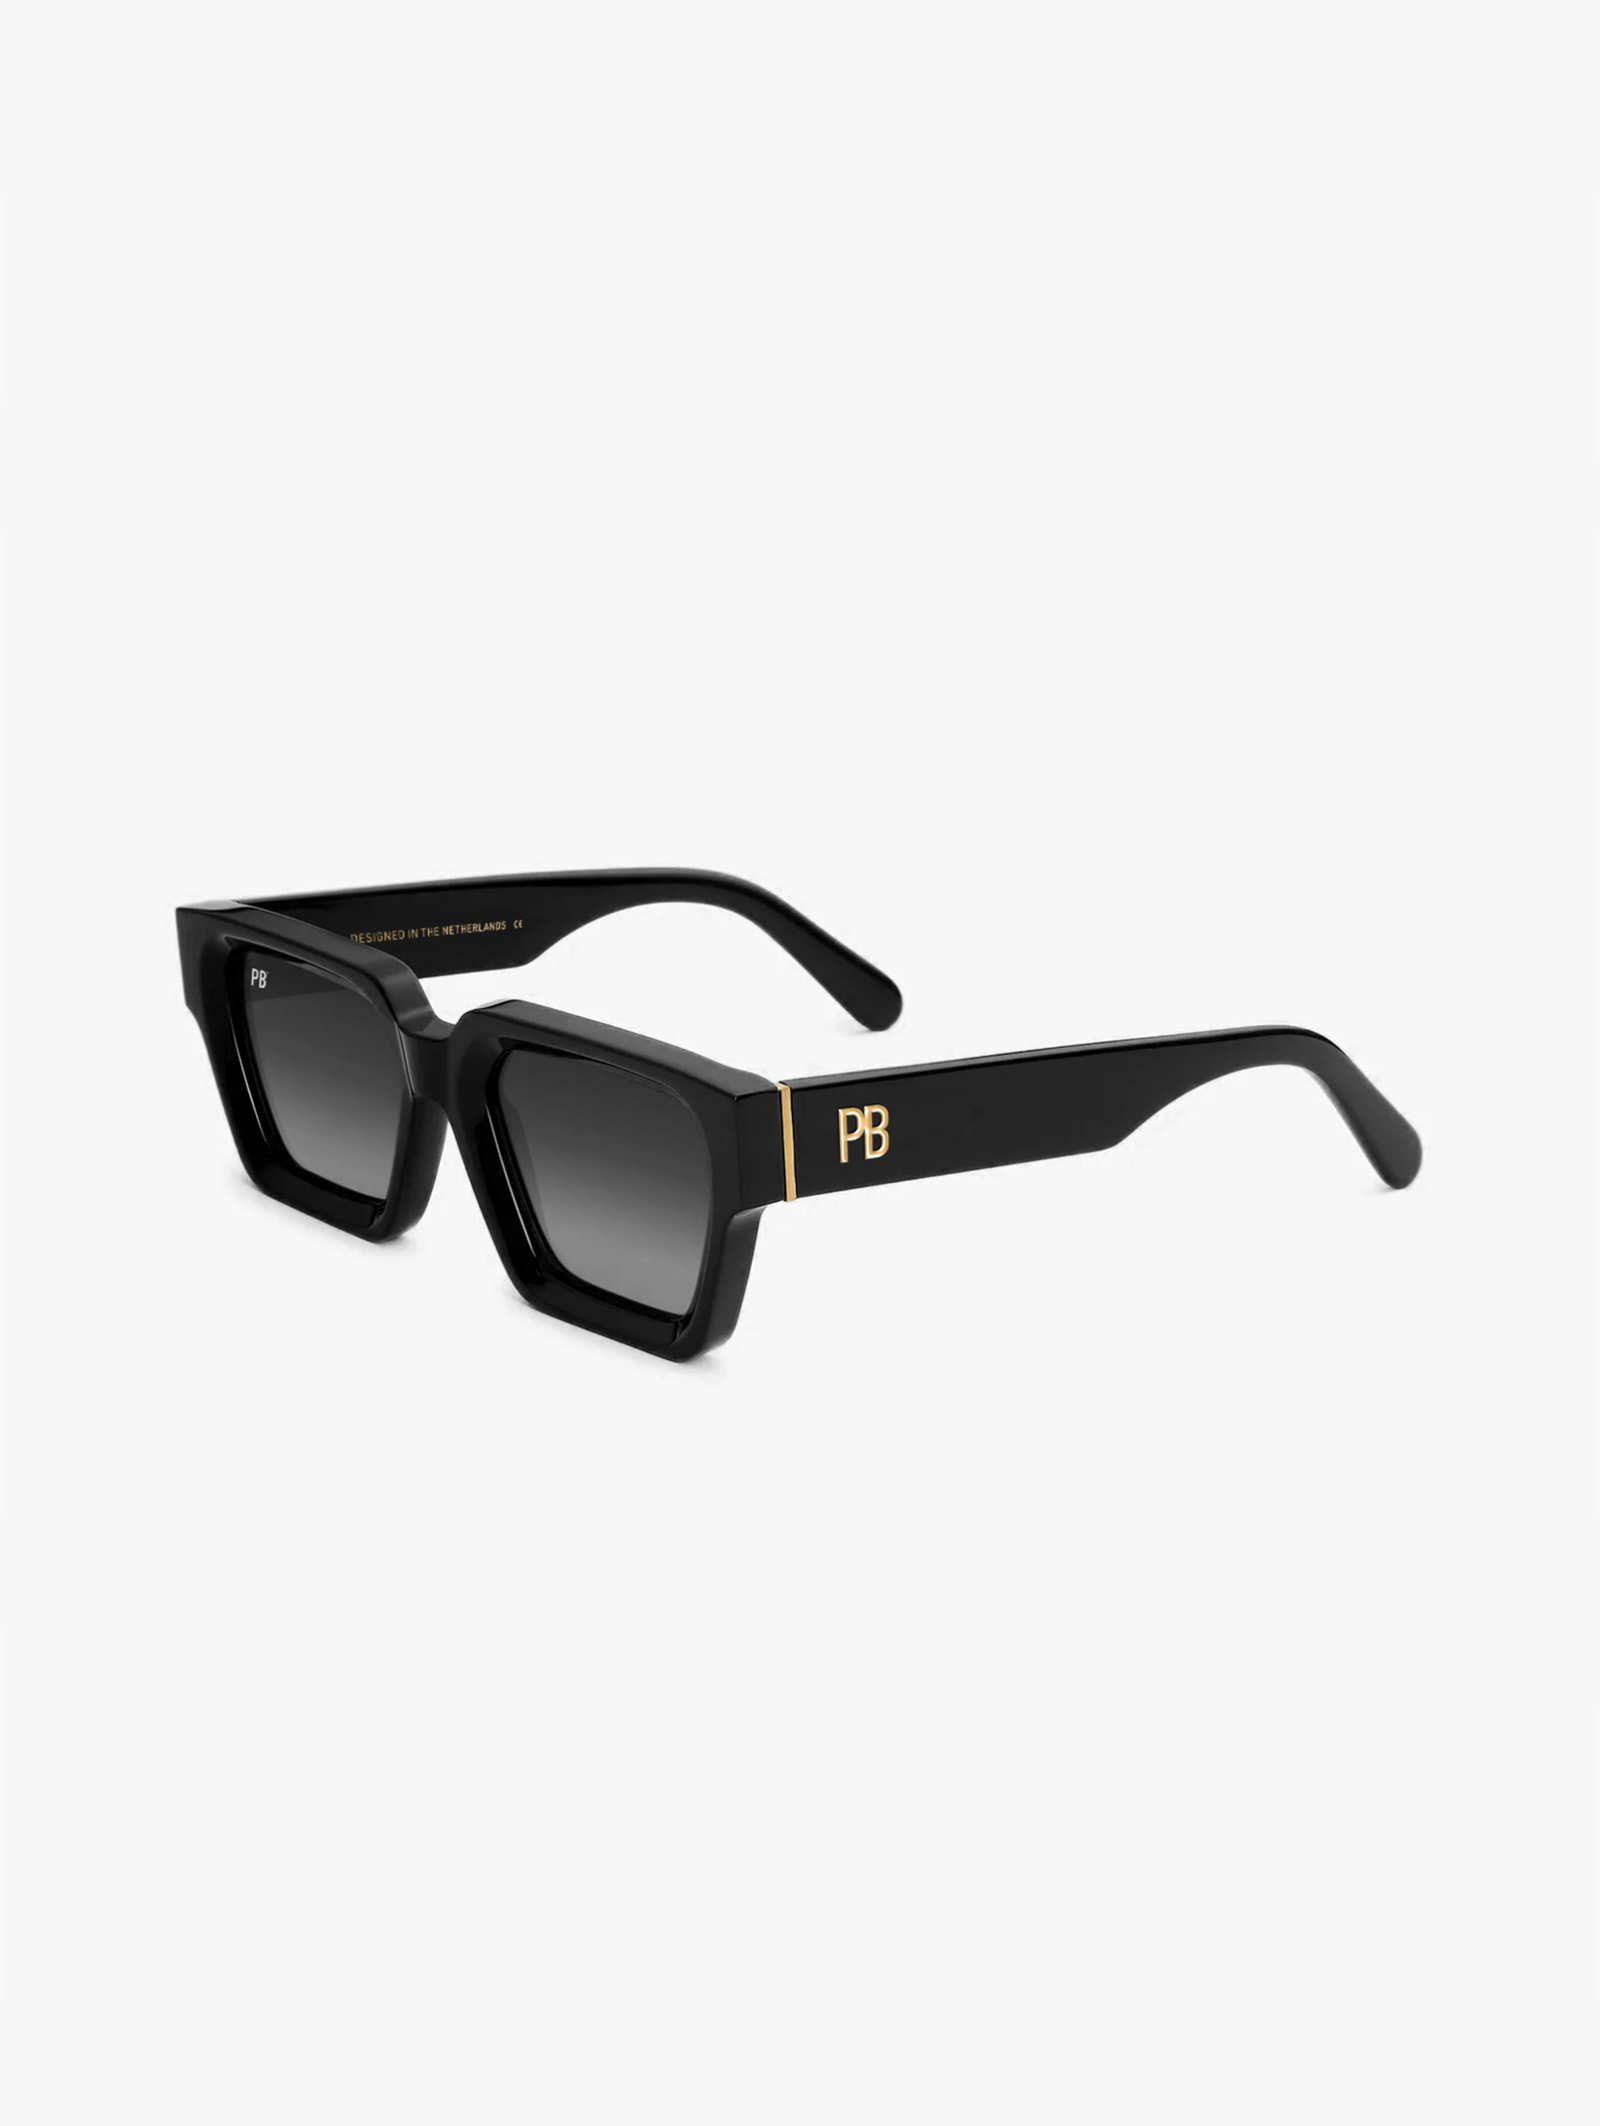 Luxor Acetate Black Sunglasses 2024